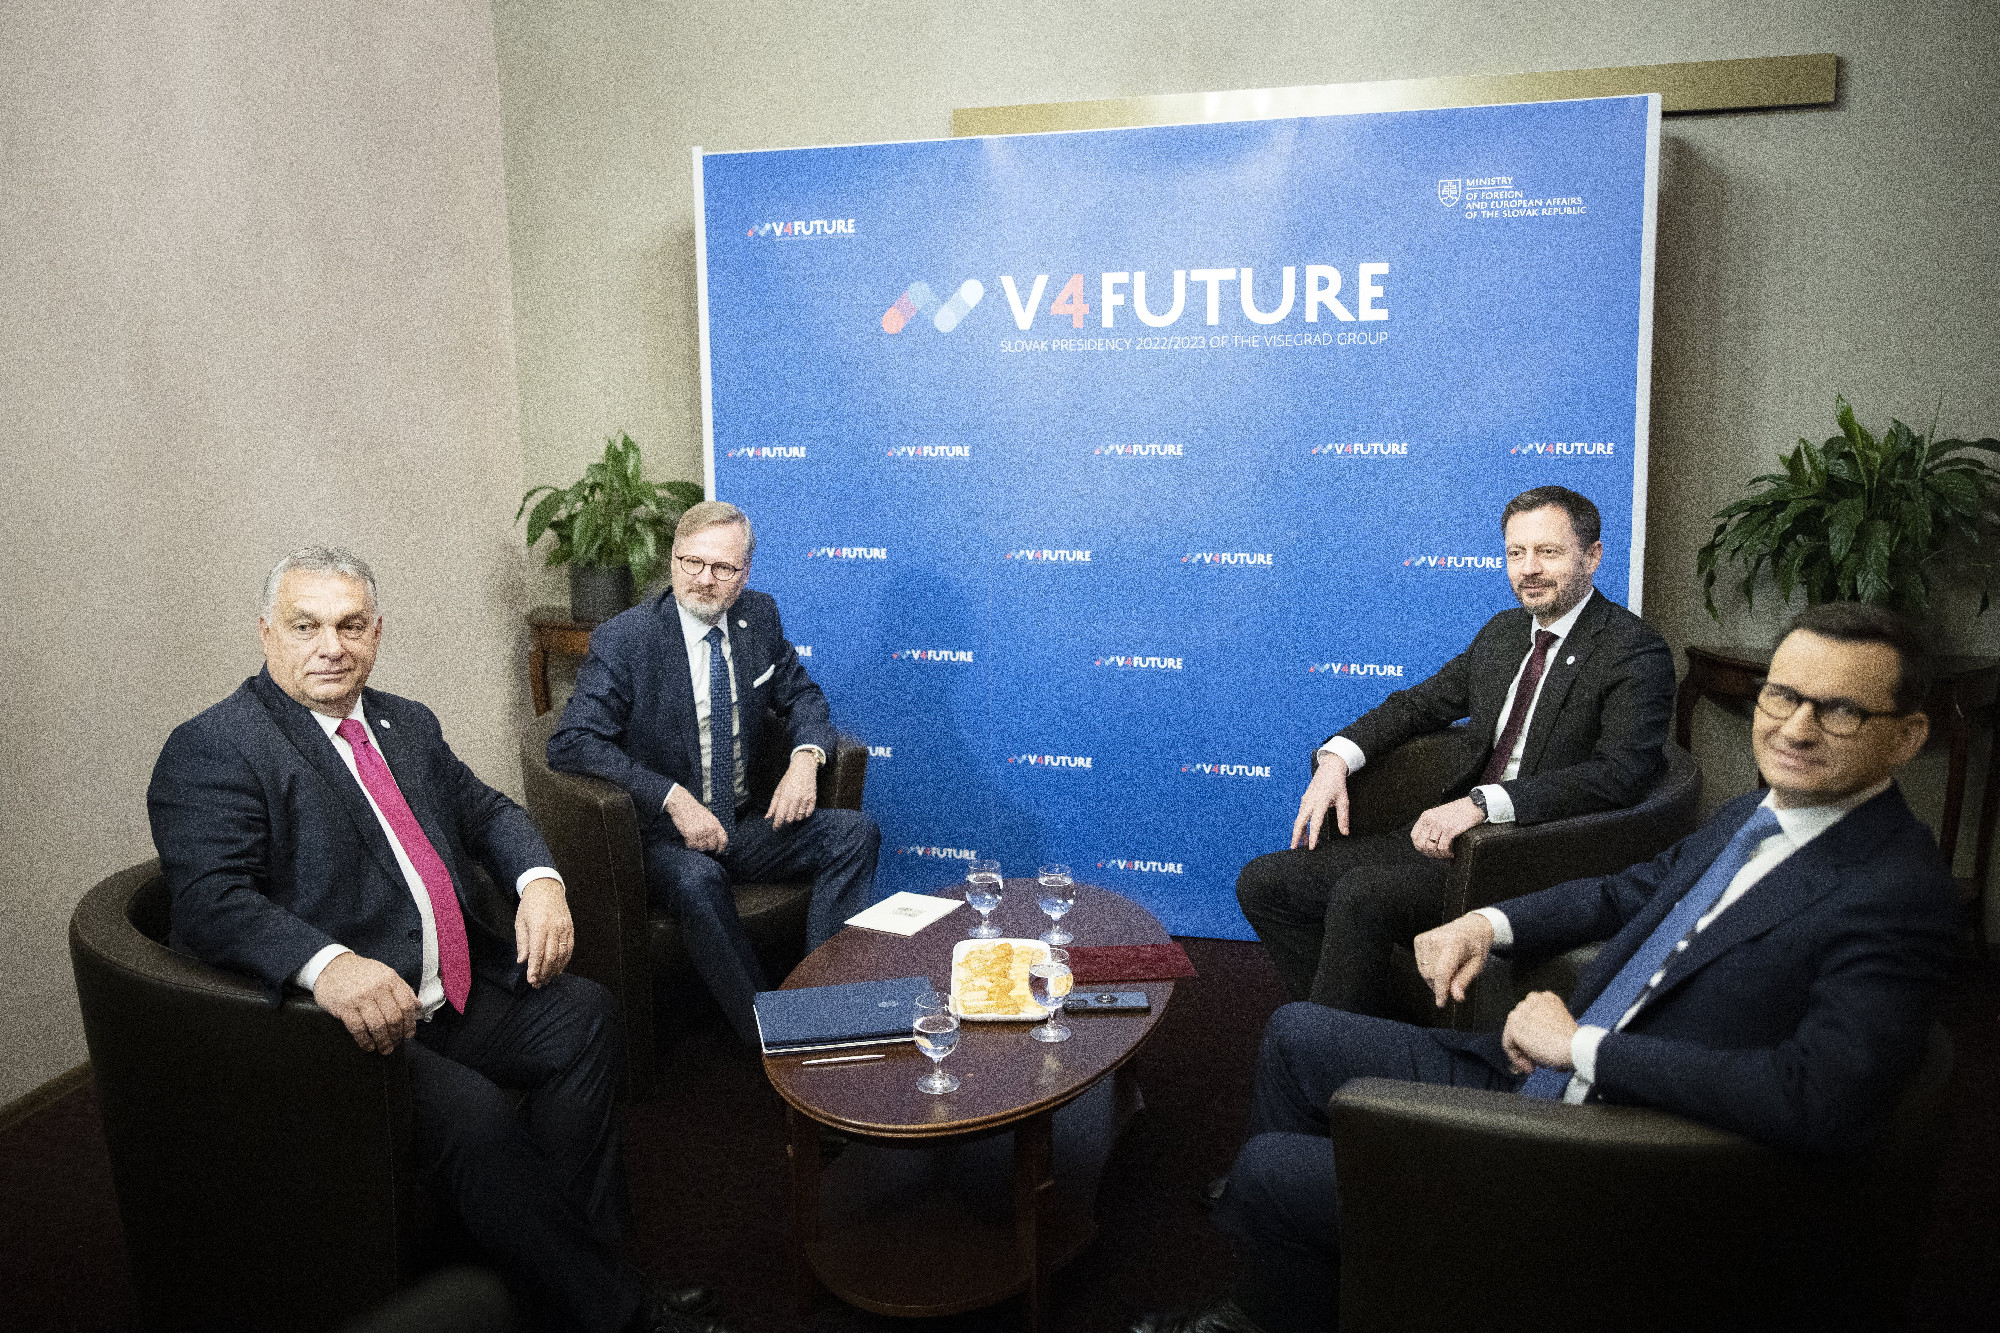 Cseh kormányfő: Nem kívánom titkolni, hogy a V4-ek csoportja nem a legjobb időszakát éli